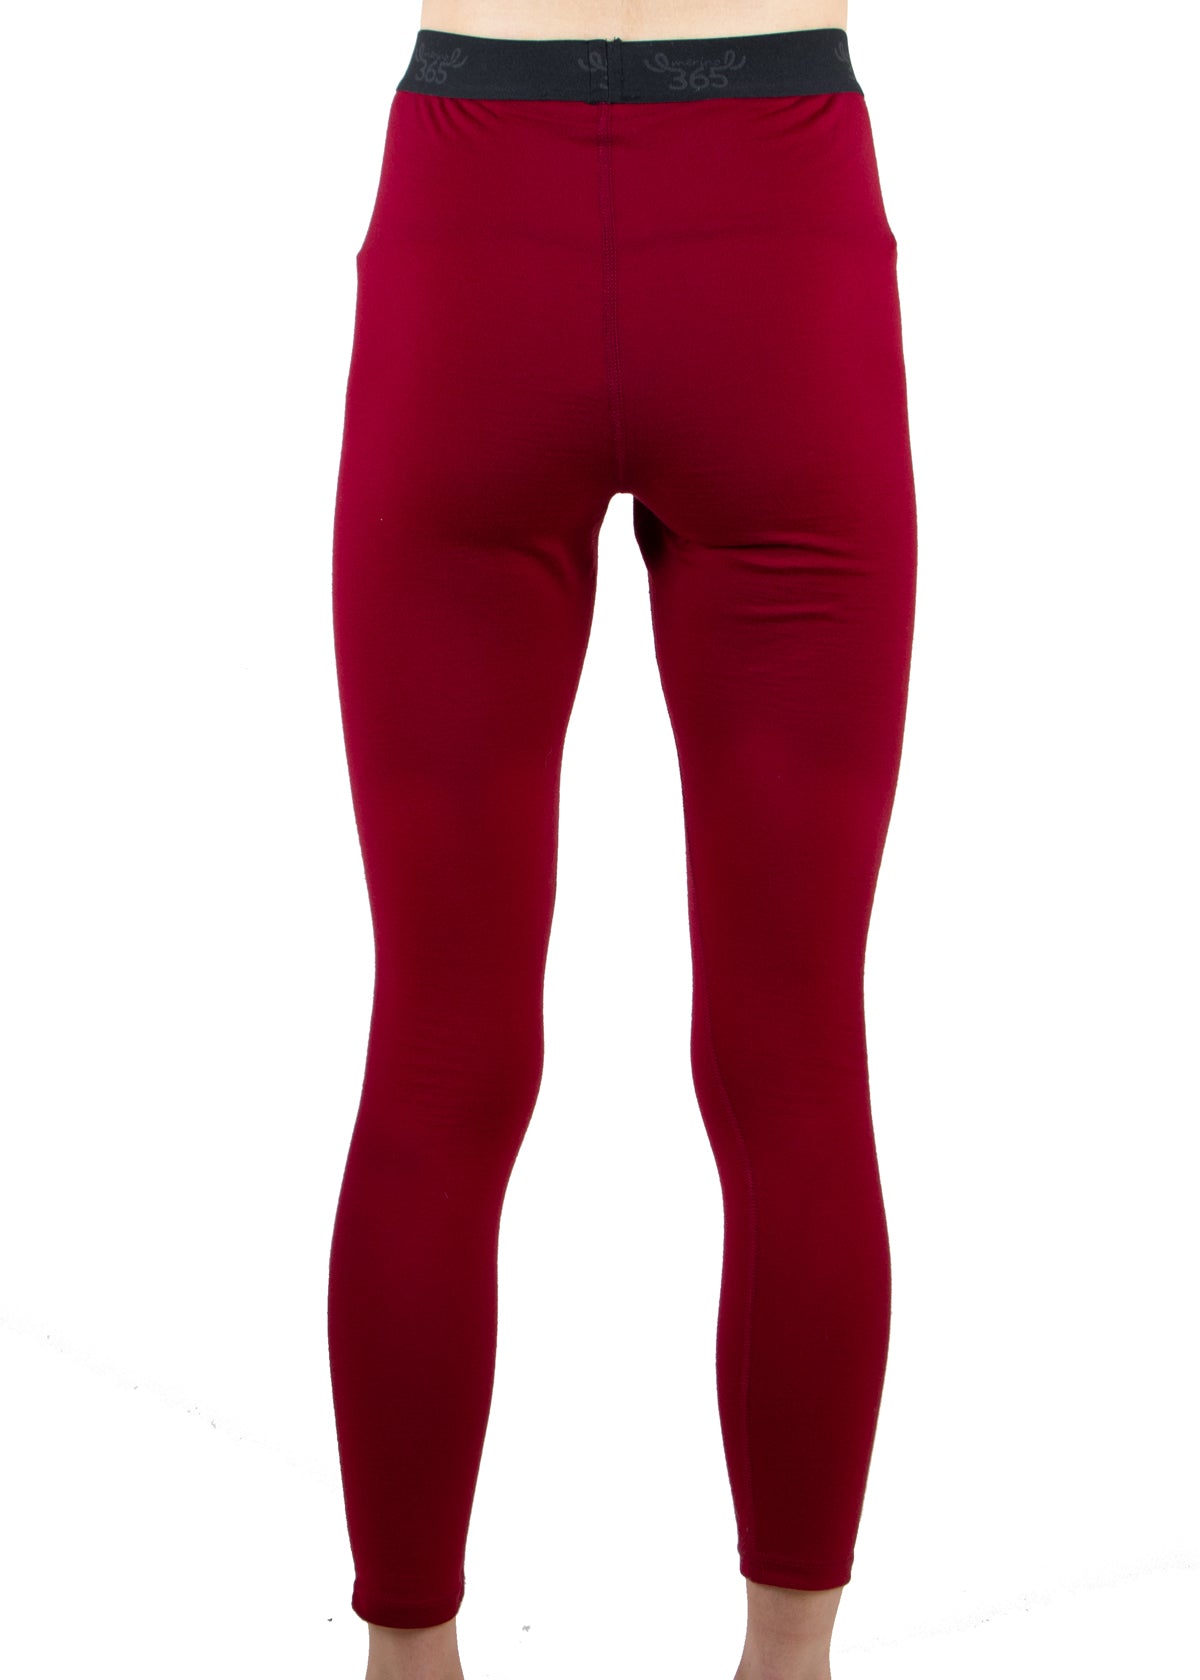 Merino 365 Women's Slim Pant with Comfort Waistband, Ruby Red